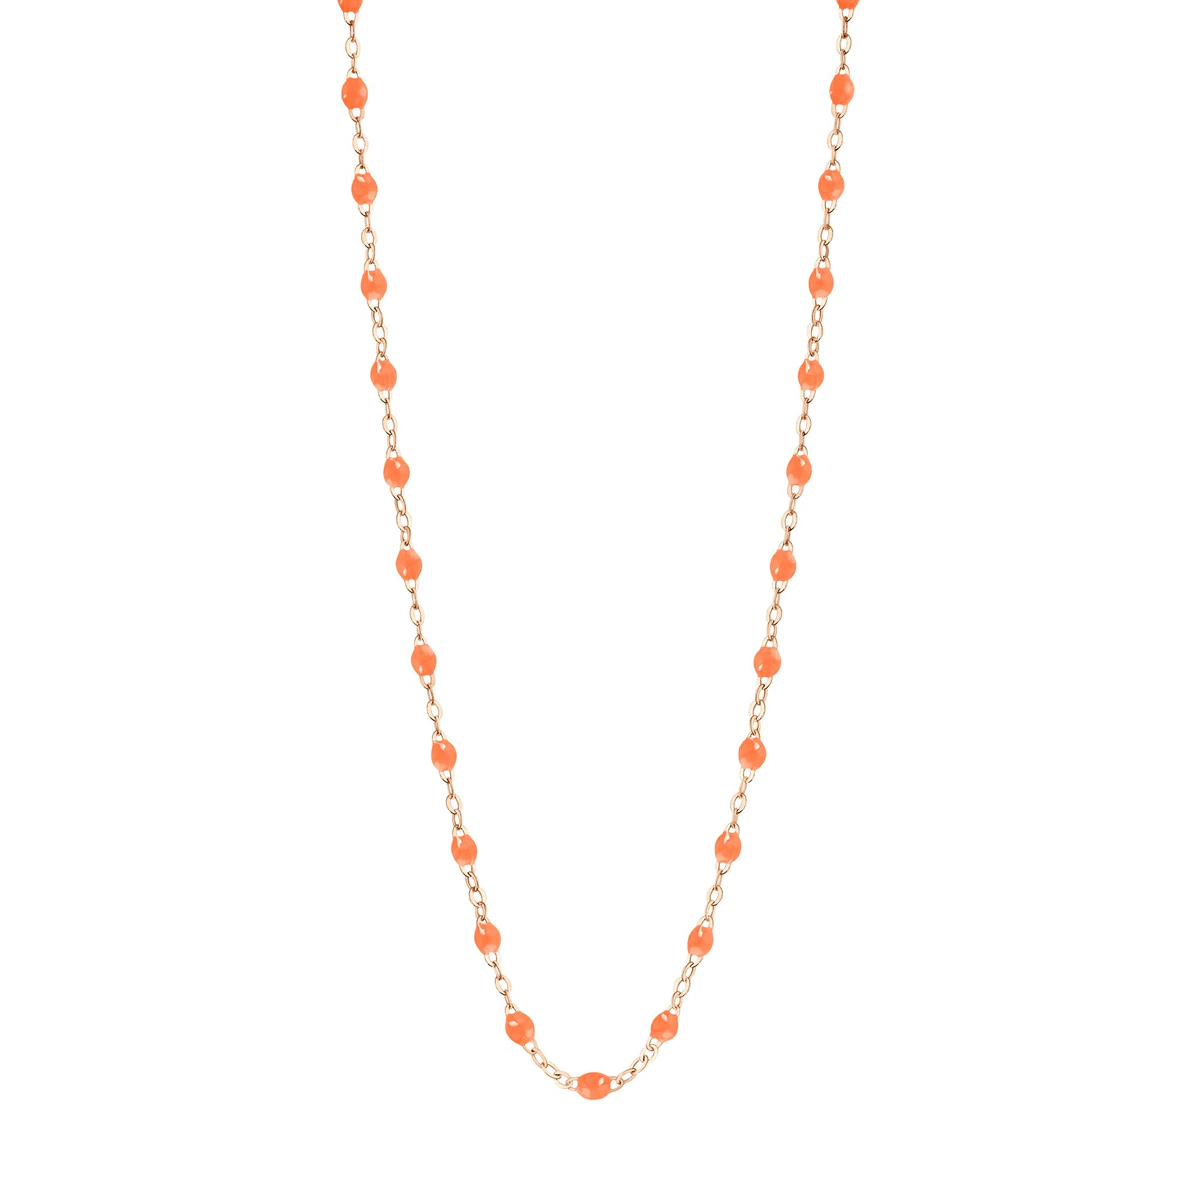 Collier Gigi Clozeau orange fluo Classique or rose 18 carats et perles de résine